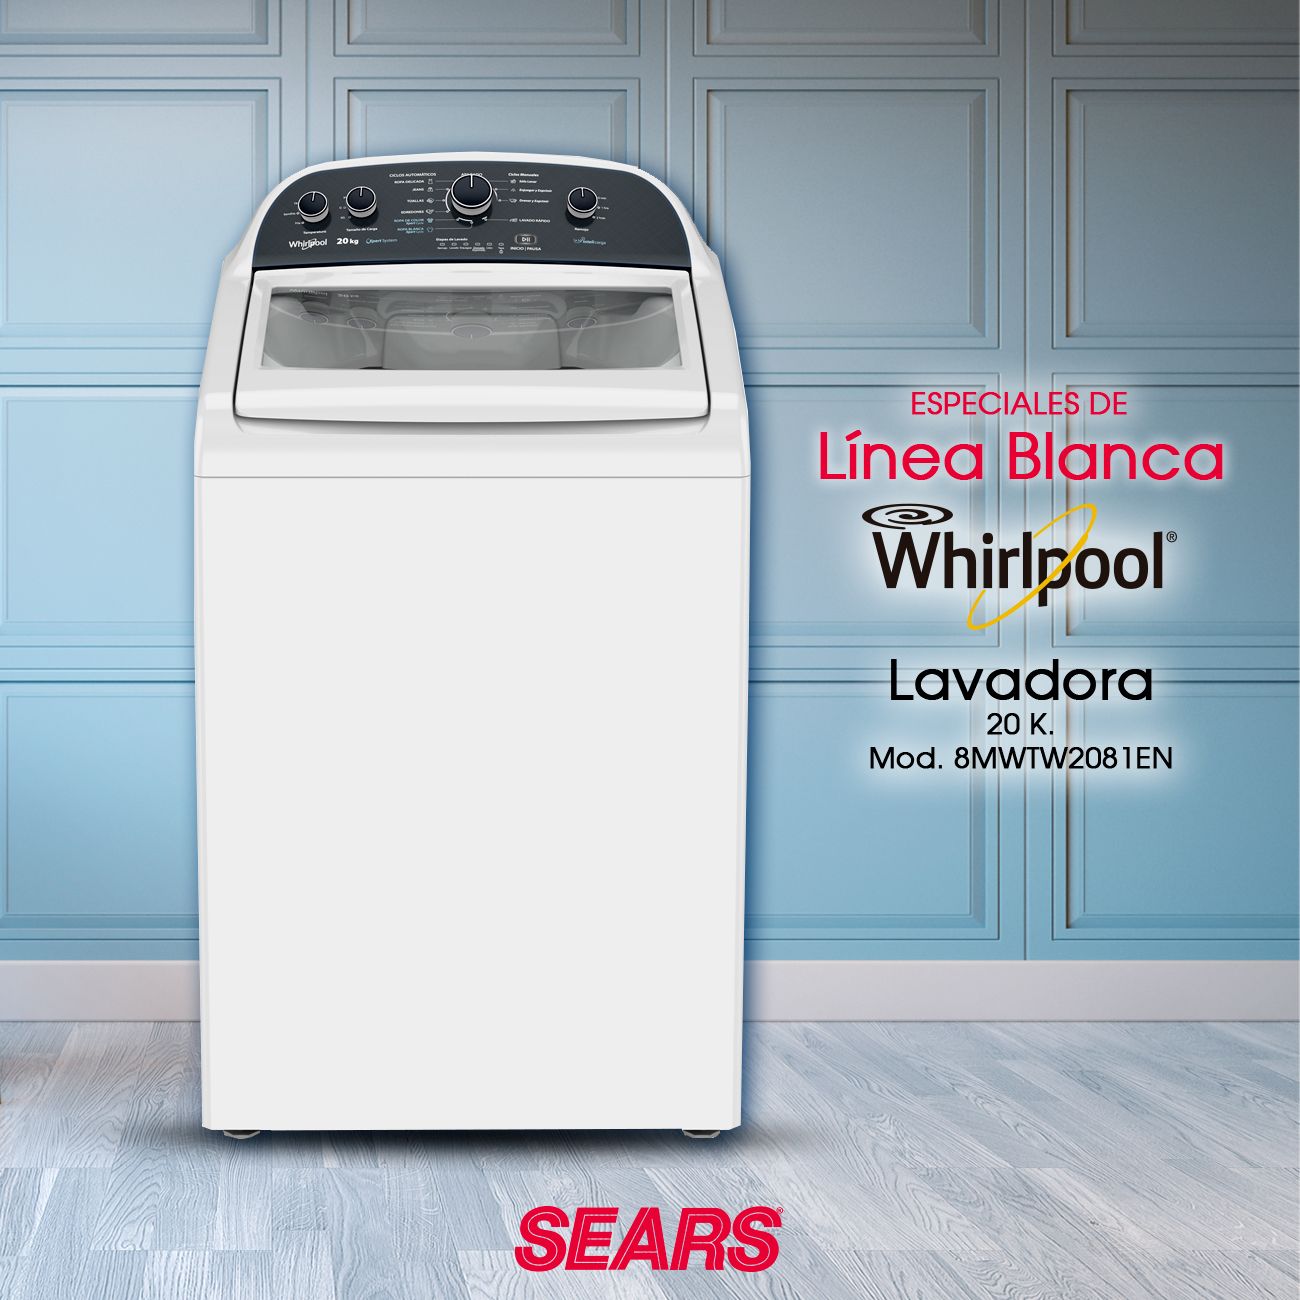 Sears México on Twitter: "La lavadora que necesitas la en Sears. ¡Adquiere favorita a un súper precio! #SearsMeEntiende Adquiere tu favorita aquí 👉 https://t.co/iWbNA0SFrS / Twitter